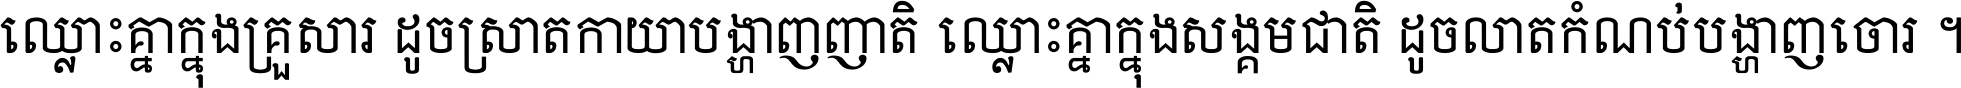 Khmerbattembang 704